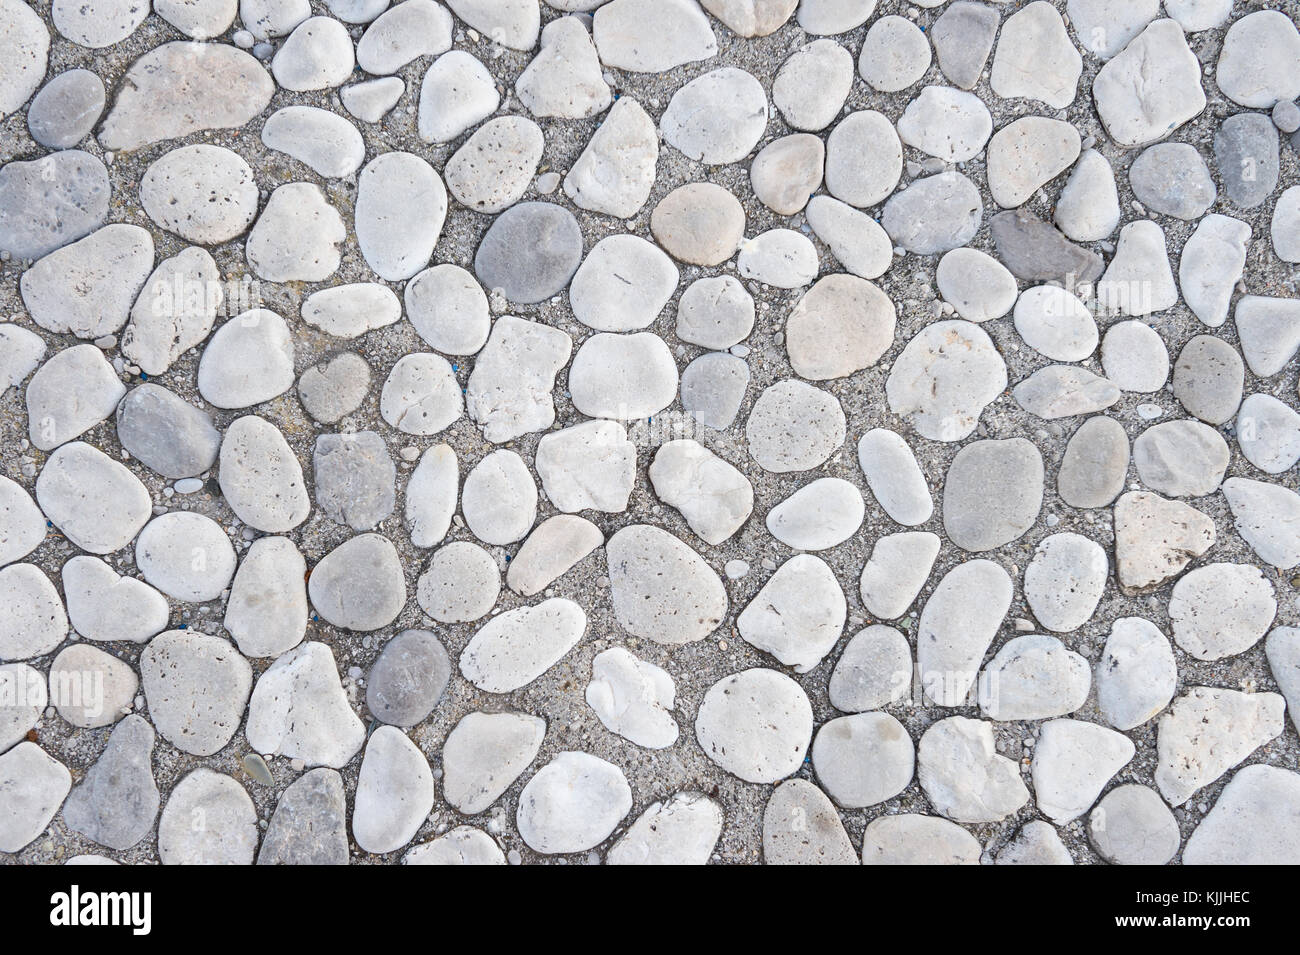 Pebble stone gris texturé abstract background Banque D'Images